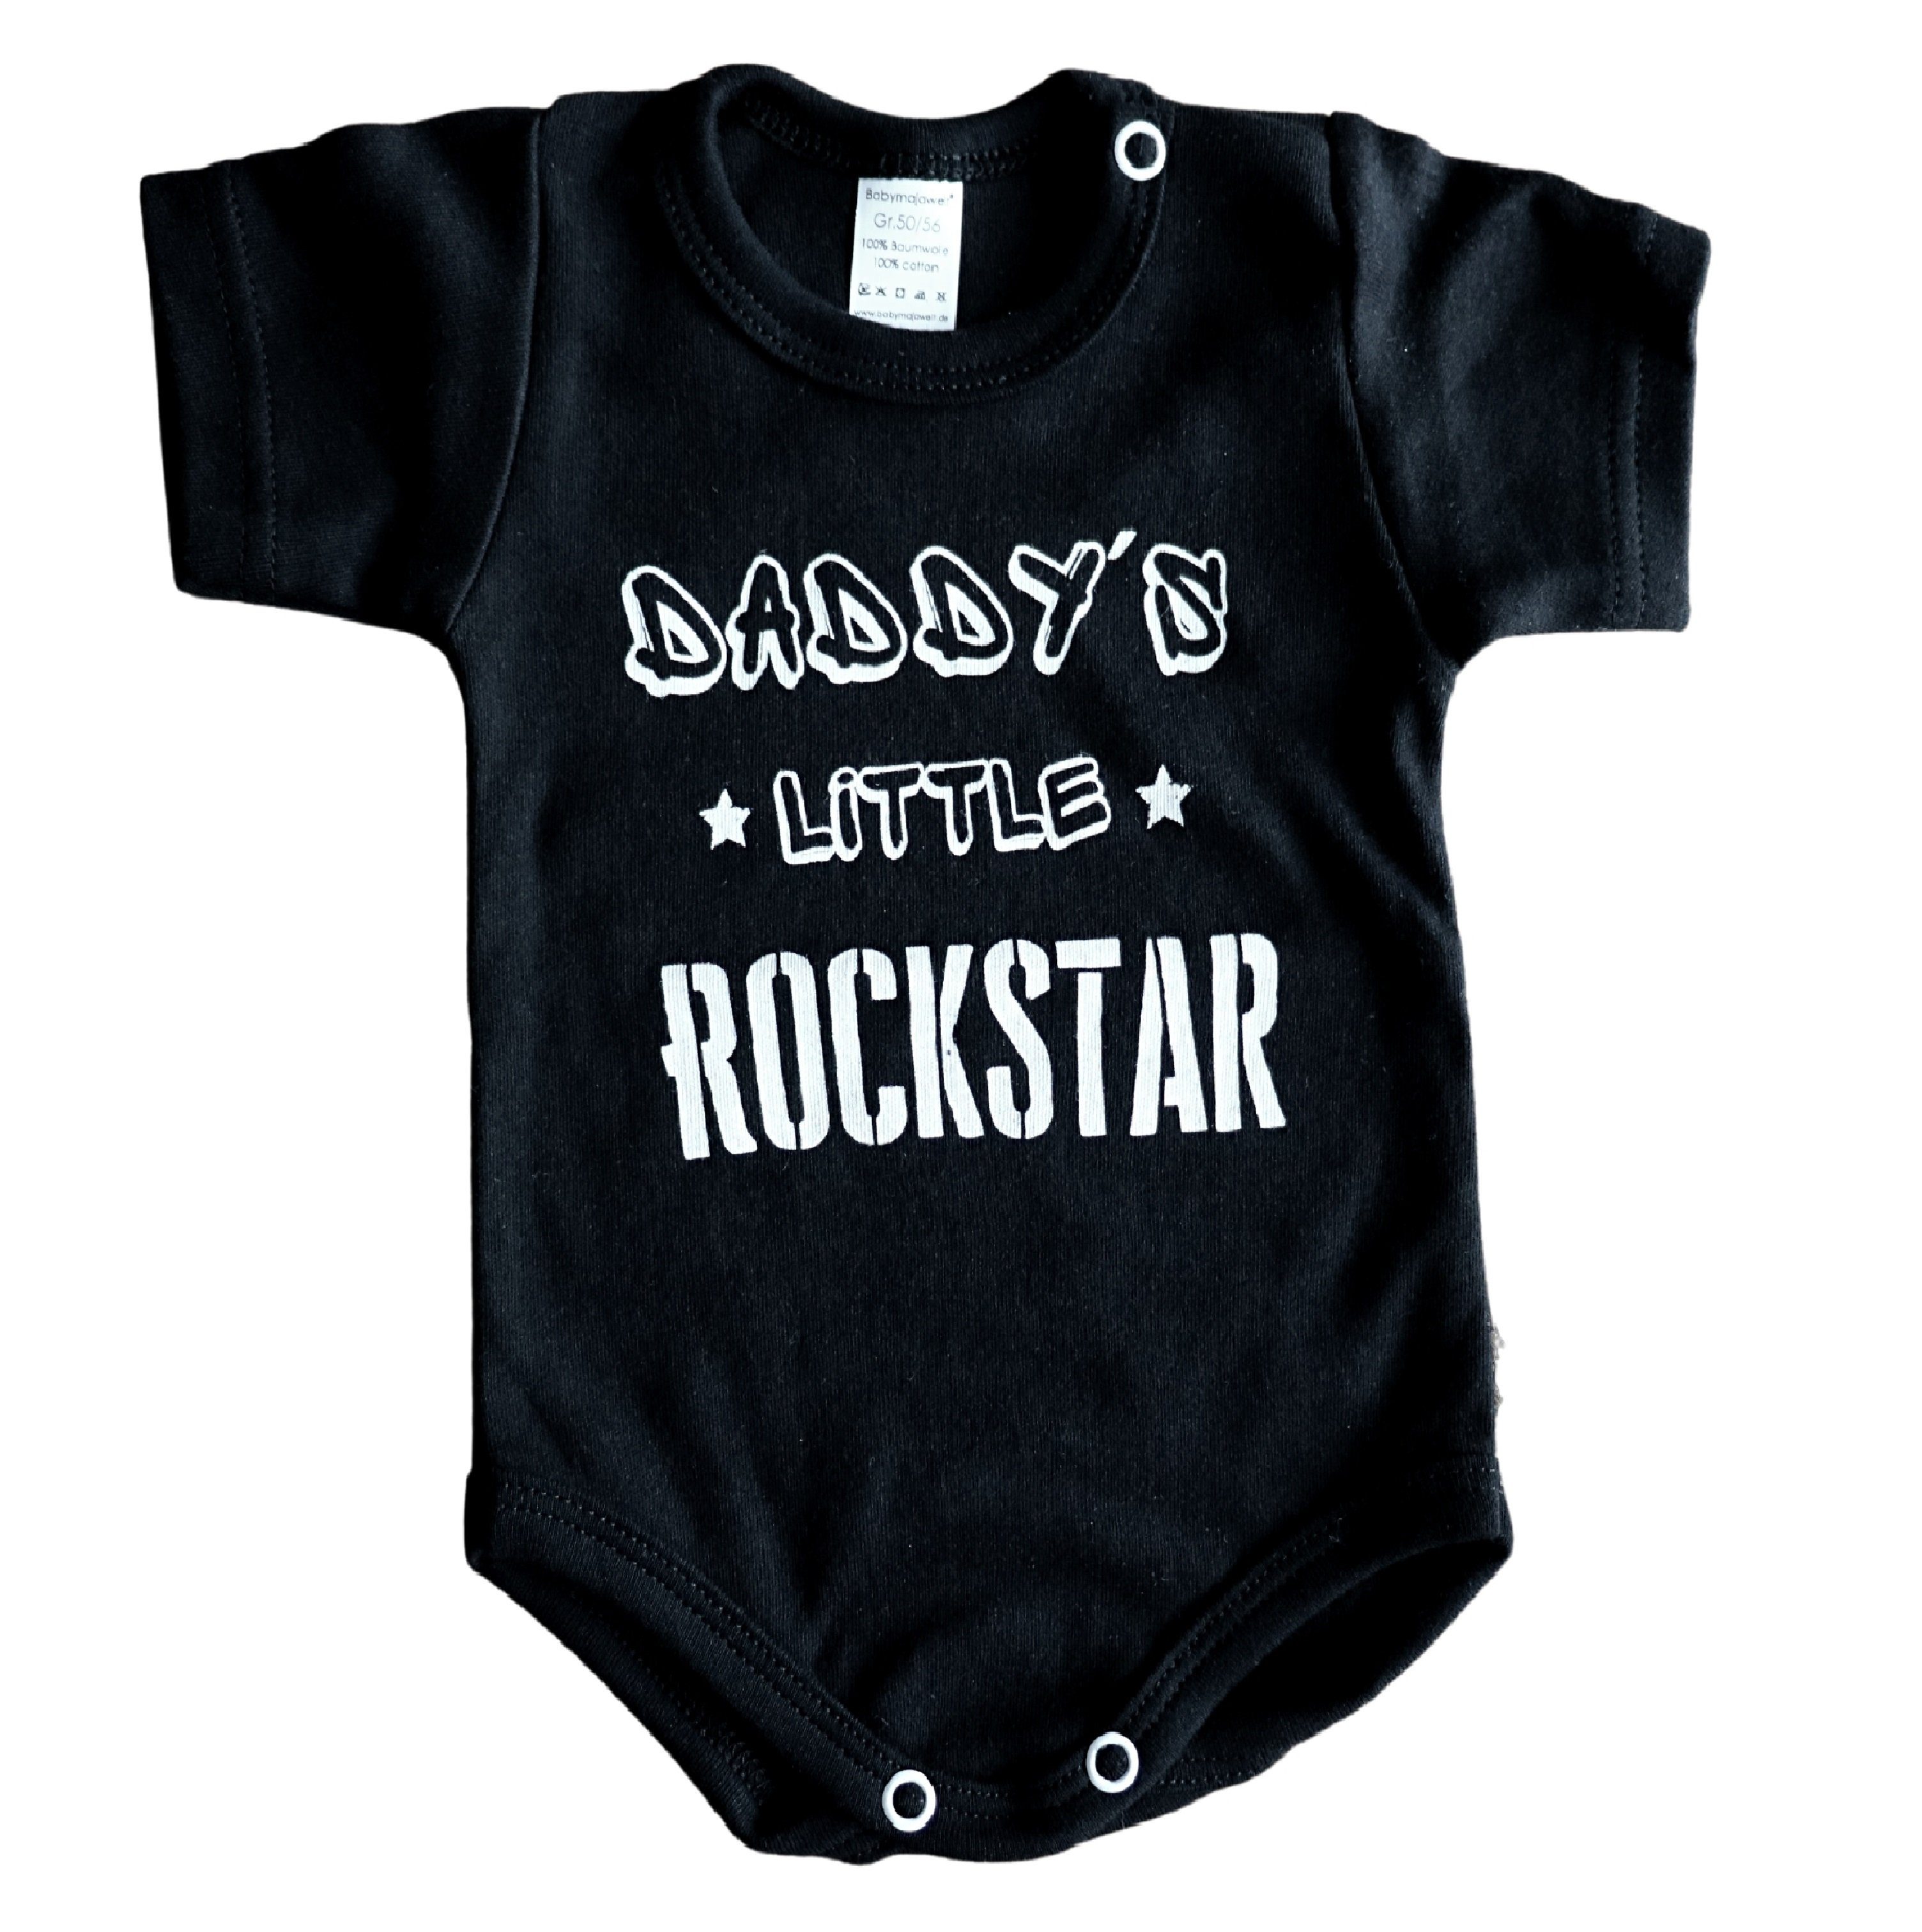 Baumwolle, EU Baby Babymajawelt Rocker! Statement "Daddy´s haltbarer Made weiche Für Body Little Body in Star" Kurzarmbody Aufdruck, Rock schwarz, kleine